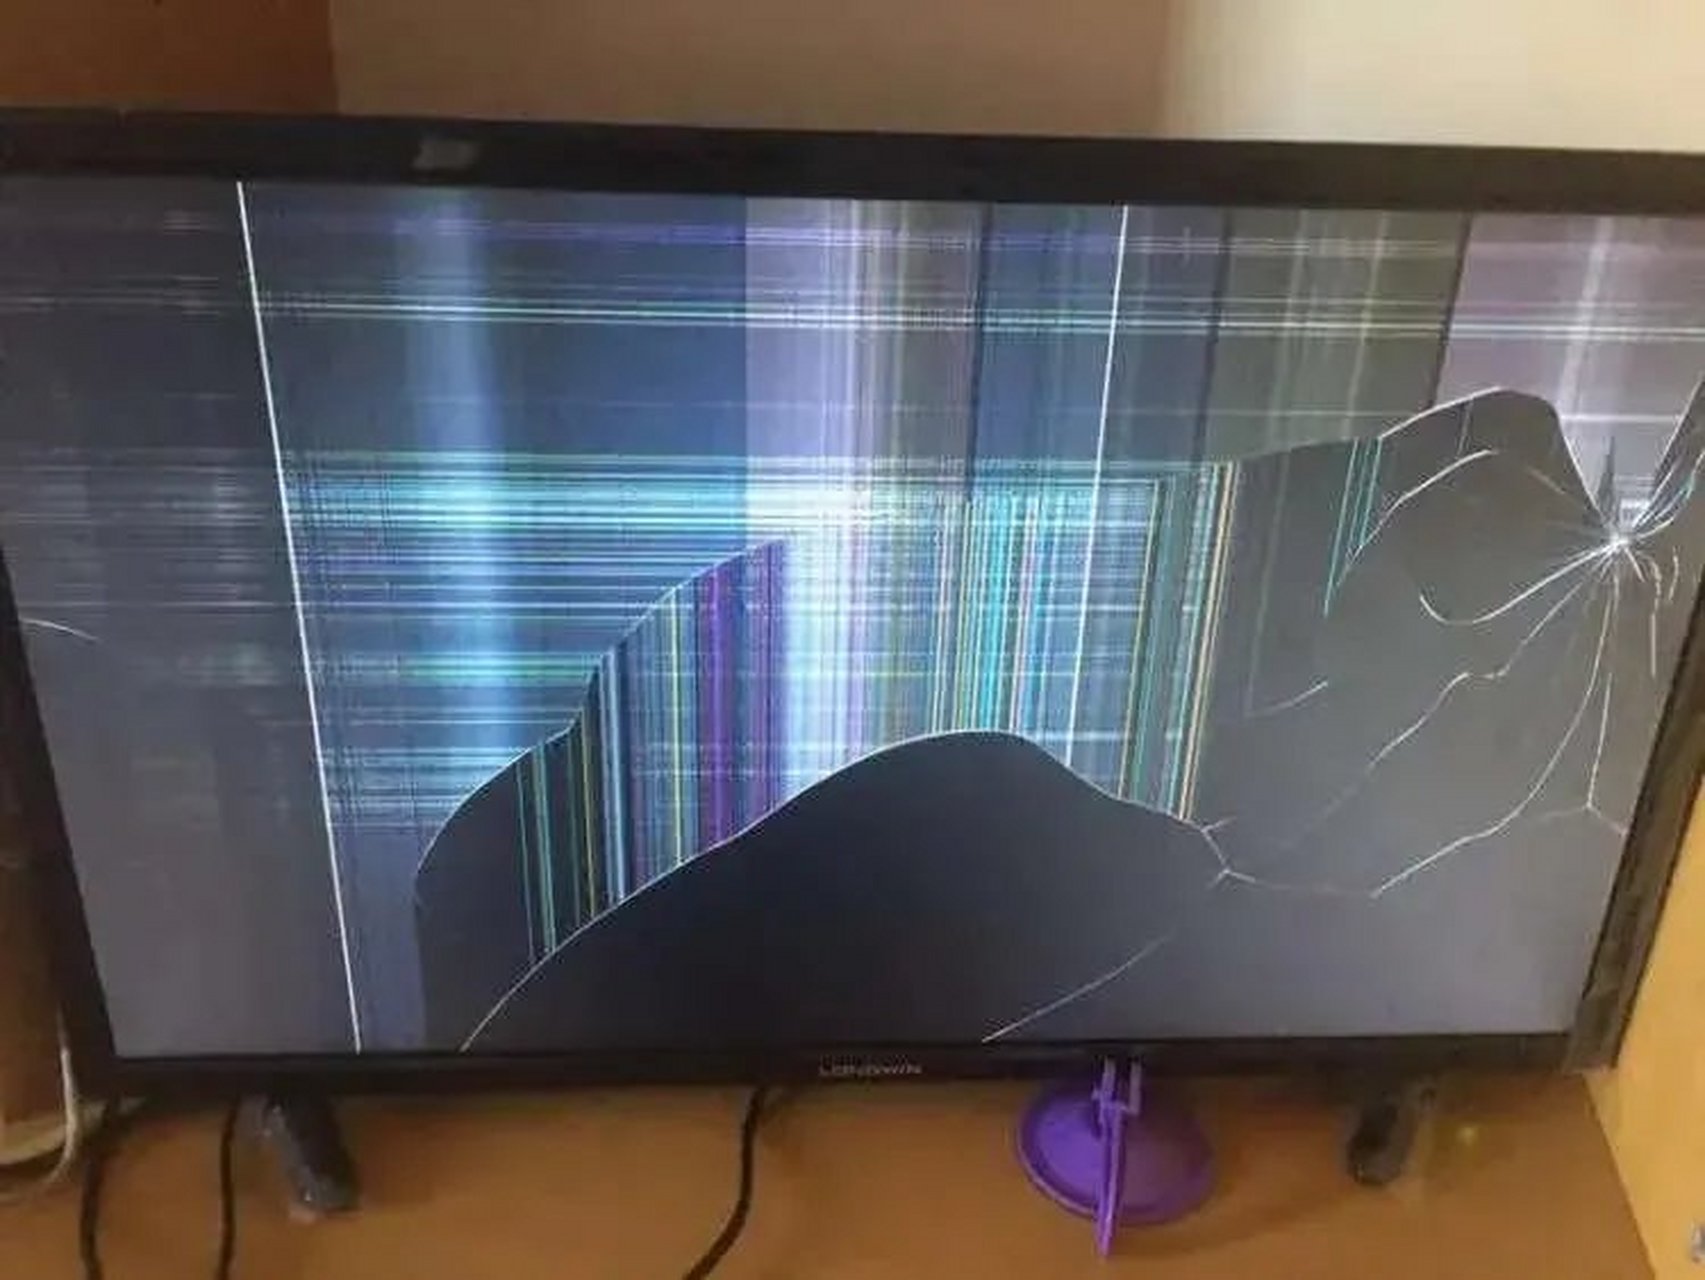 电视机被砸坏的图片图片